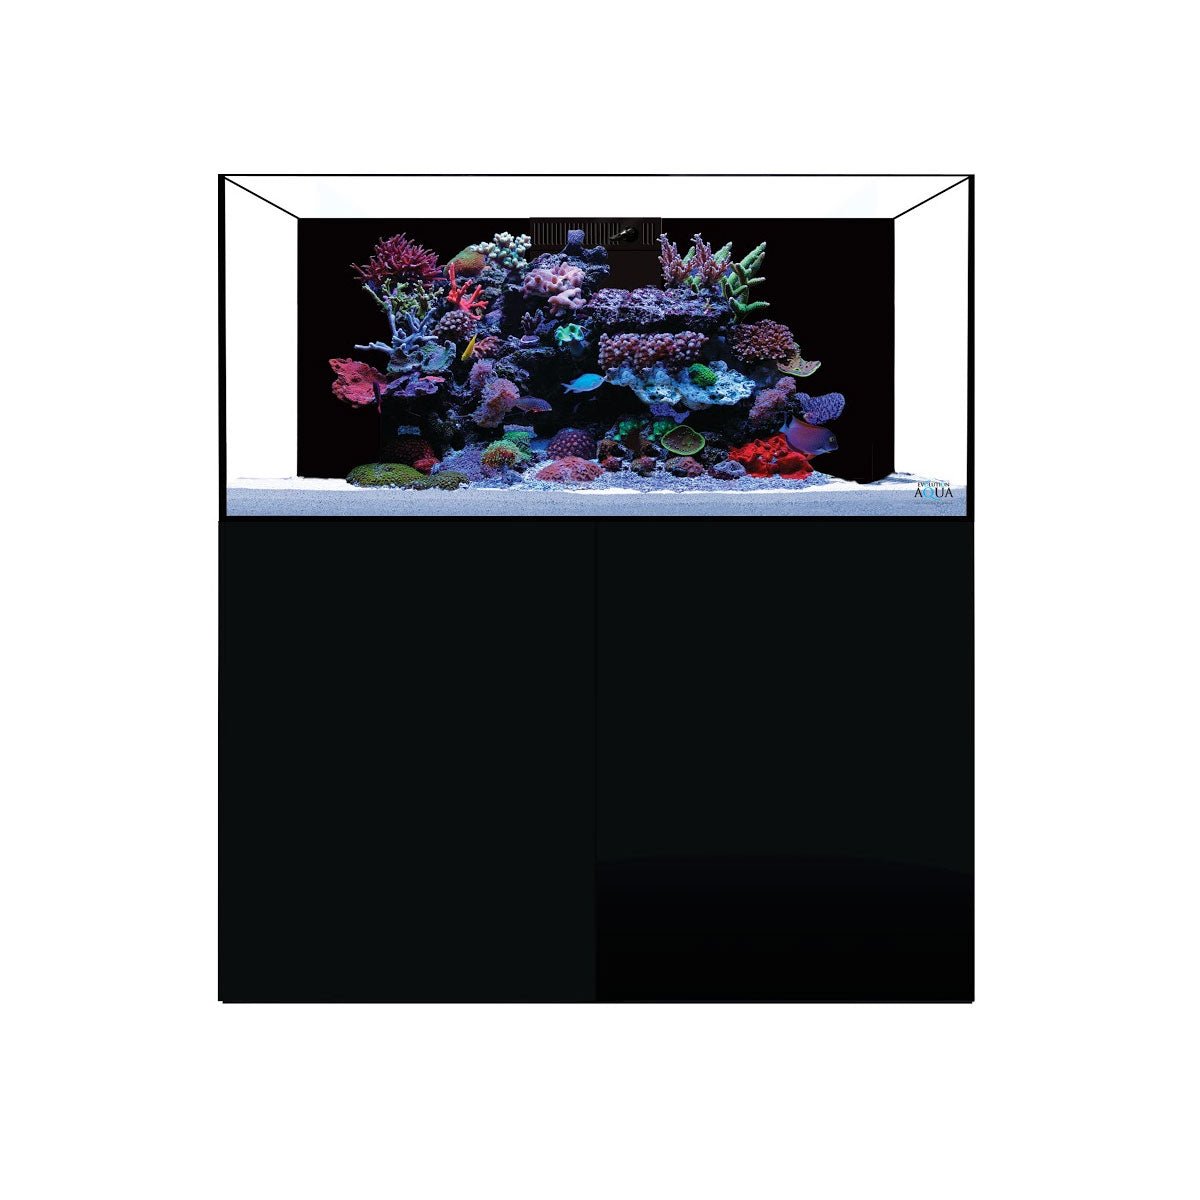 D-D Aqua-Pro Reef 1200 - Platinum Oak - AquaFrame Cabinet - Charterhouse Aquatics